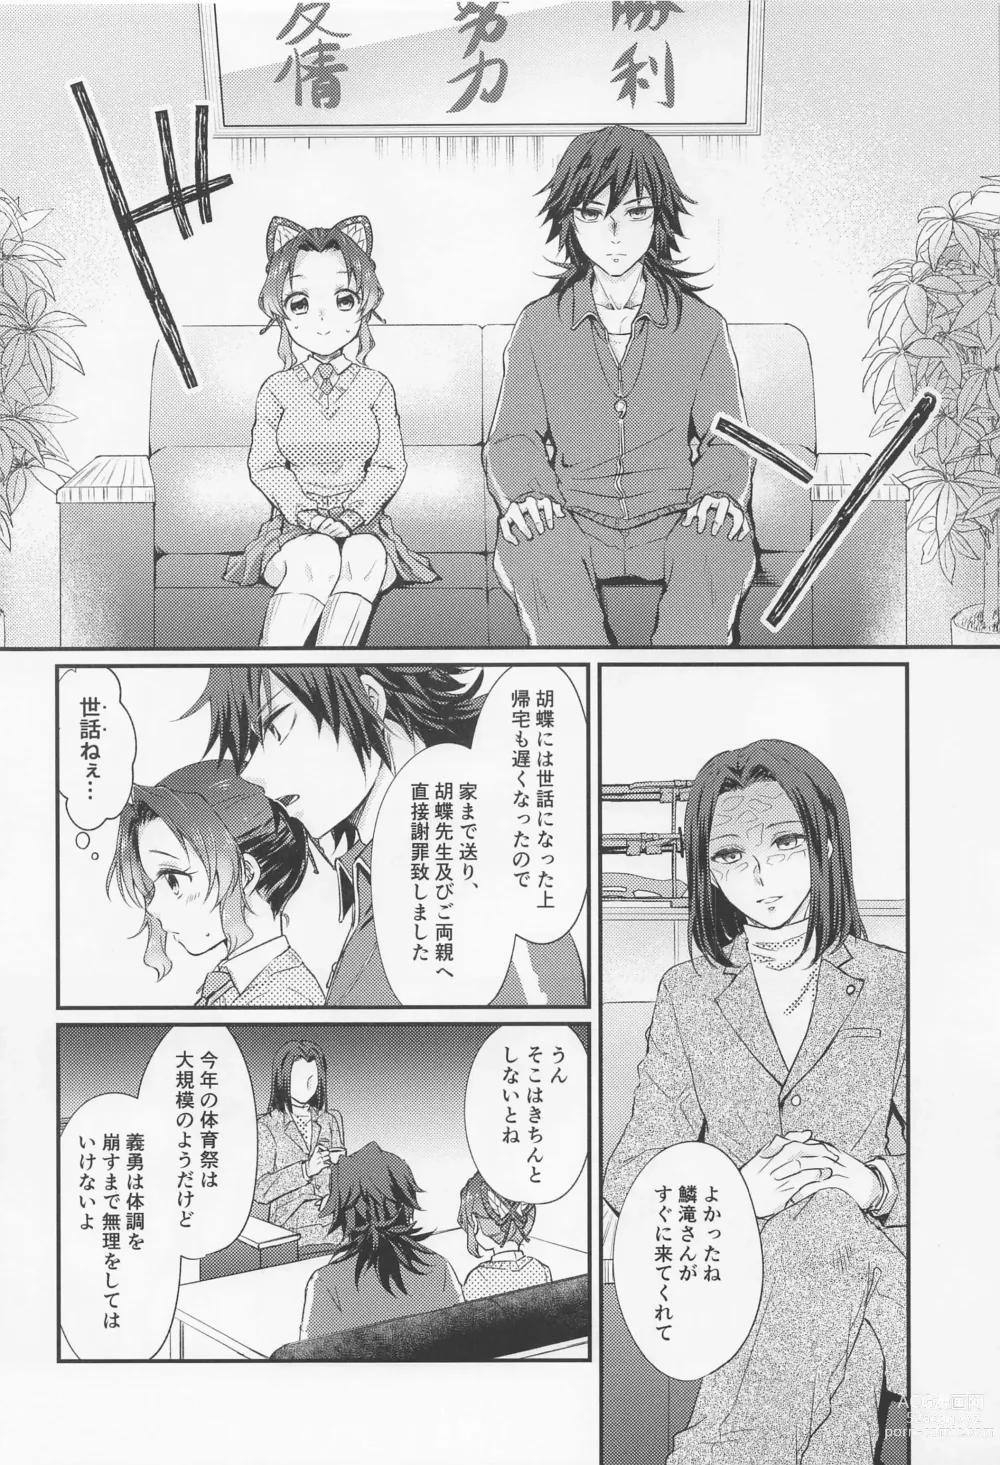 Page 33 of doujinshi Amakara Oxymoron